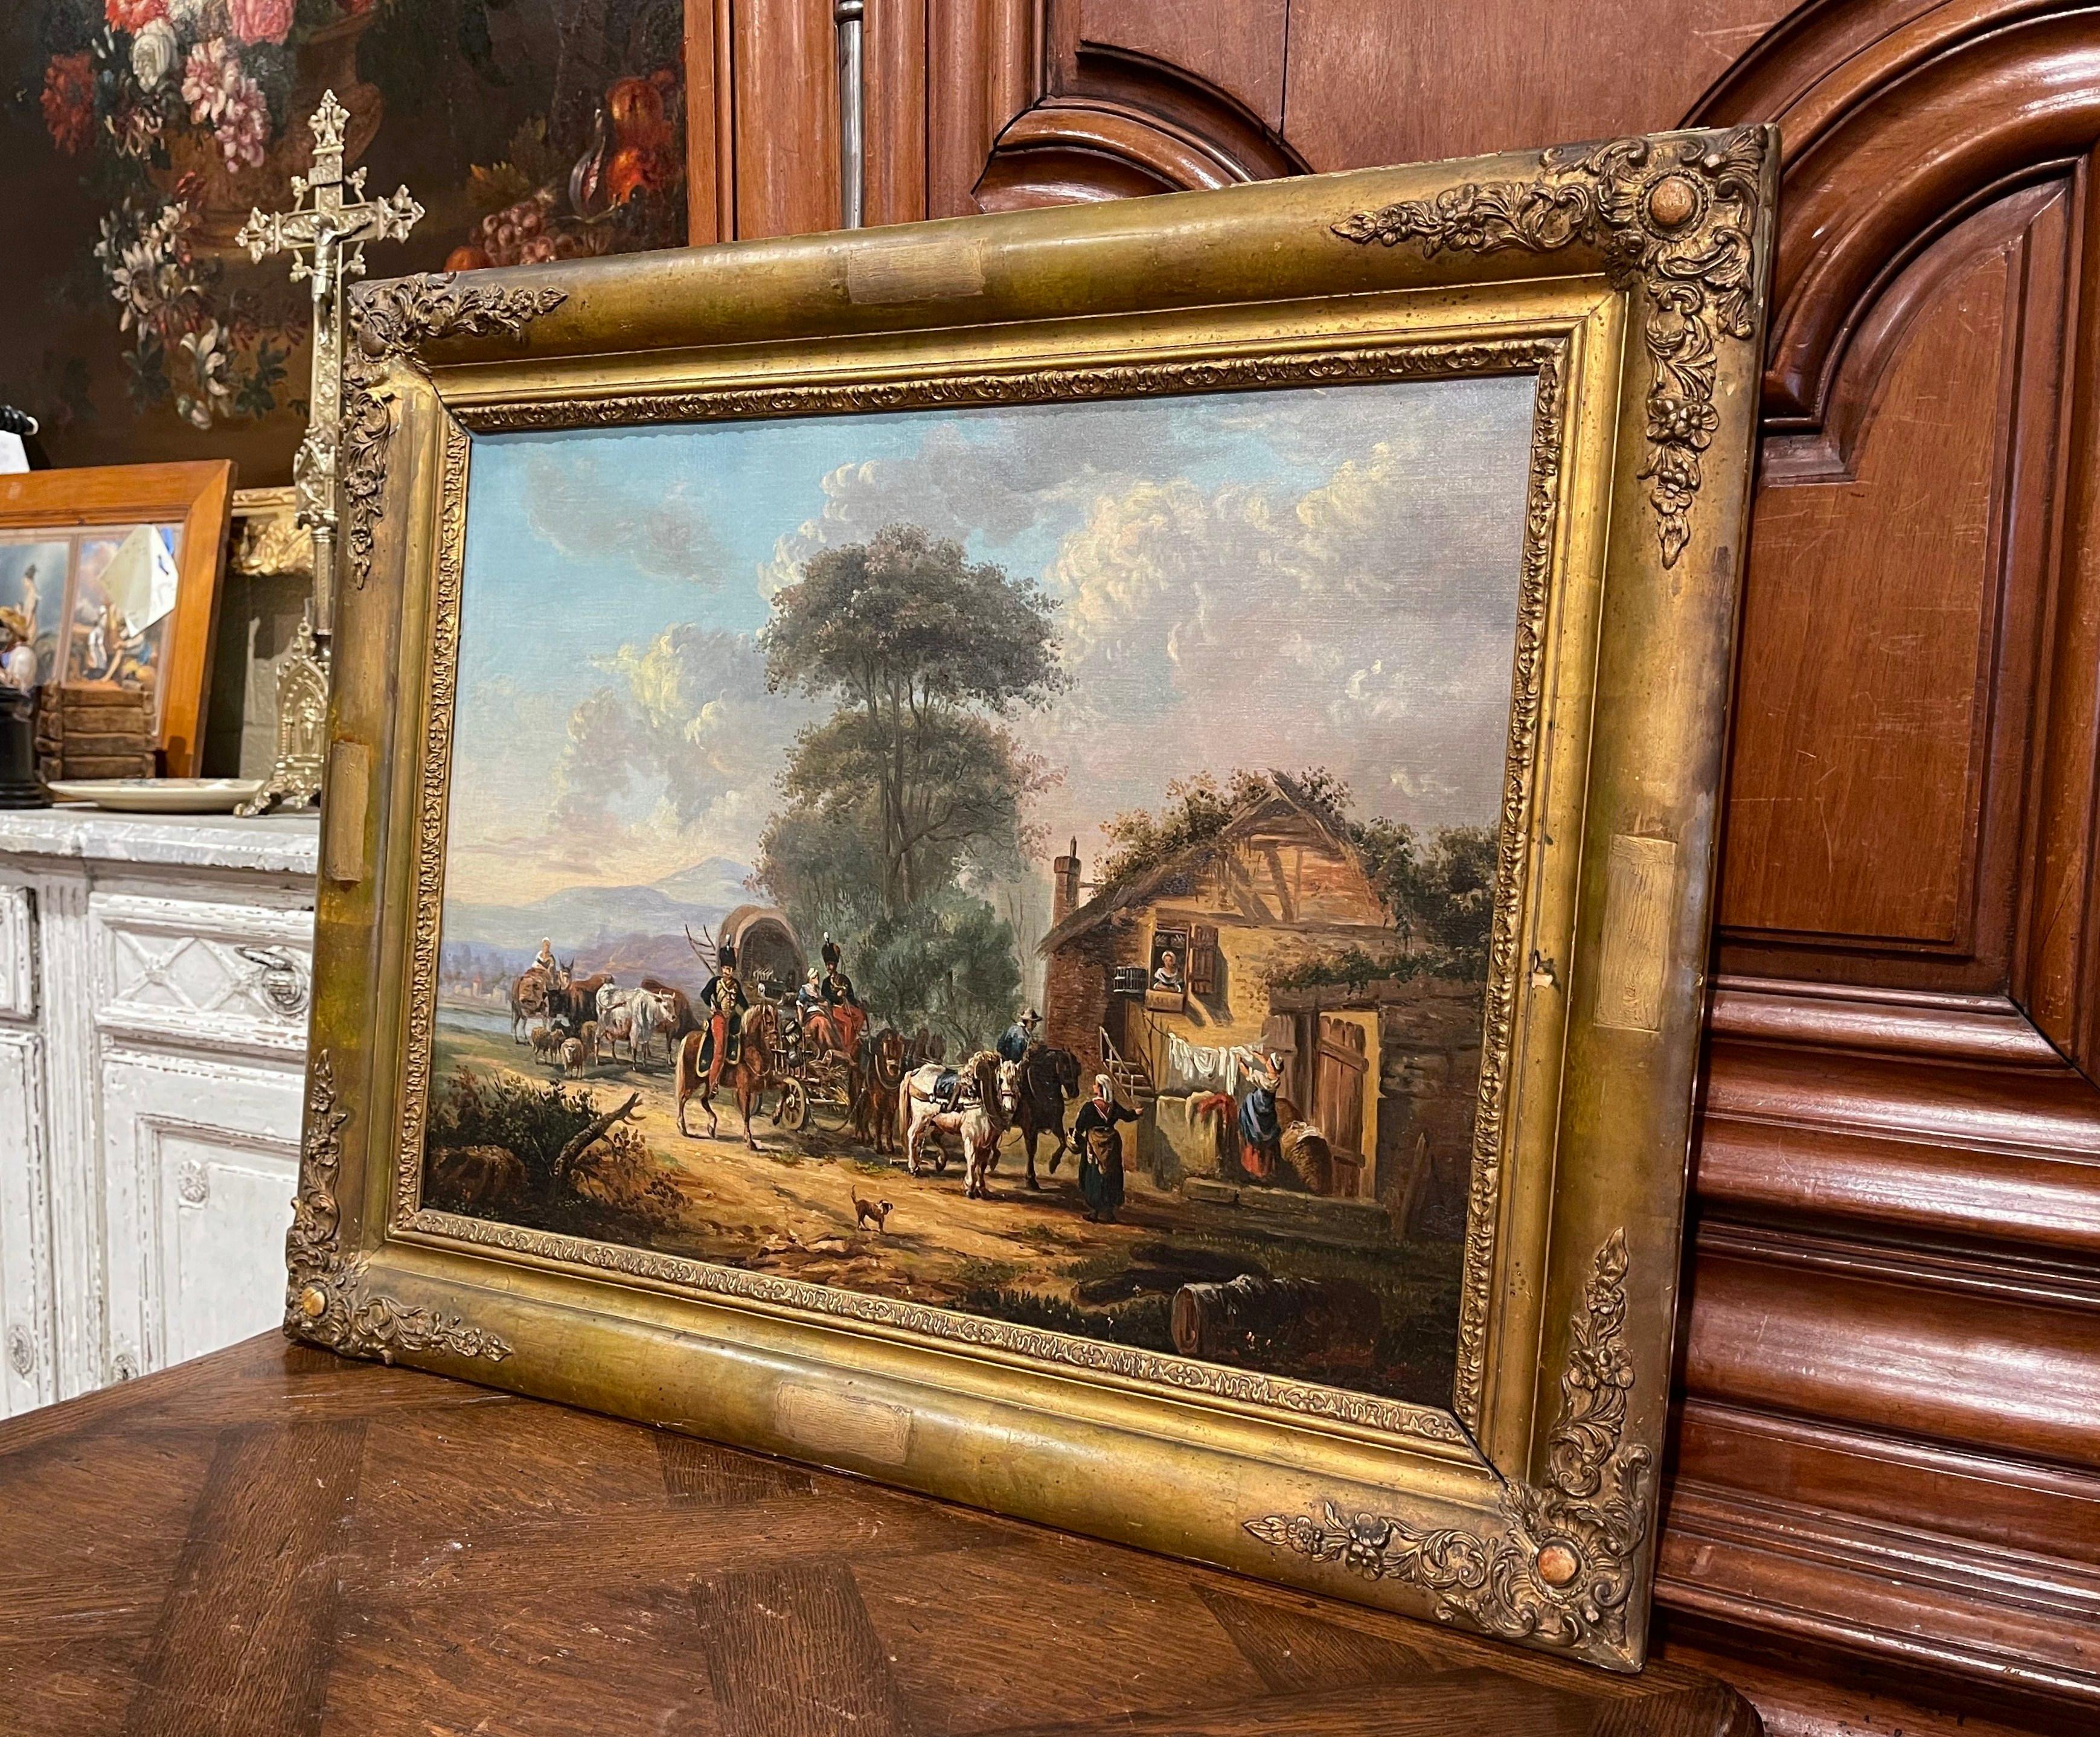 Placée dans son cadre original en bois sculpté et doré et peinte en France vers 1860, cette toile ancienne représente une scène pastorale avec des soldats en calèche s'arrêtant devant une ferme. Les soldats portent des uniformes Napoléon III et